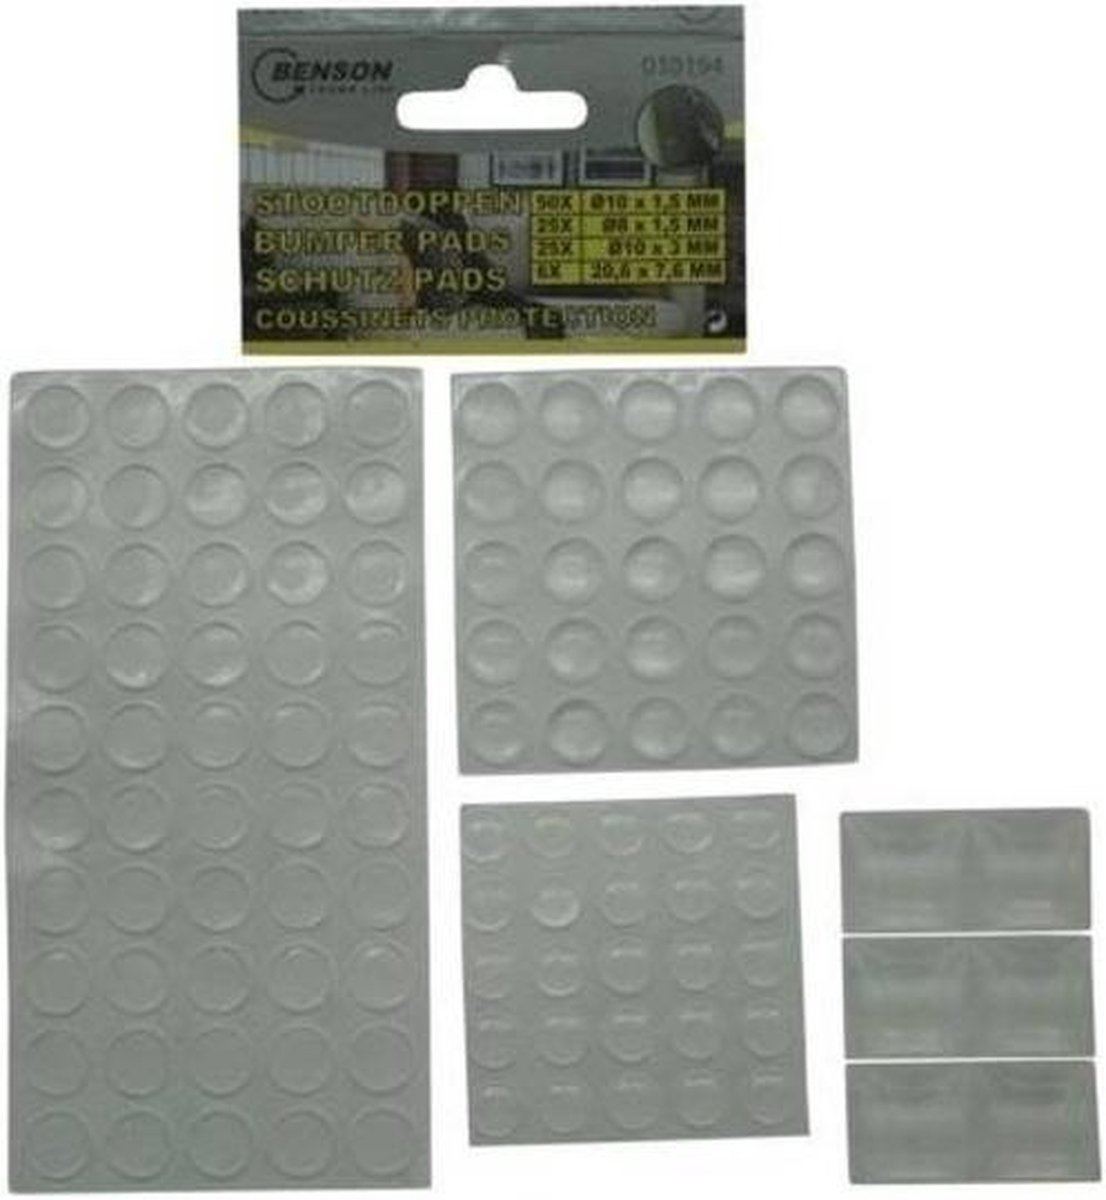 Siliconen stootdoppen / stootdruppels 106 stuks assorti - Glazen tafel / deur beschermers - Merkloos